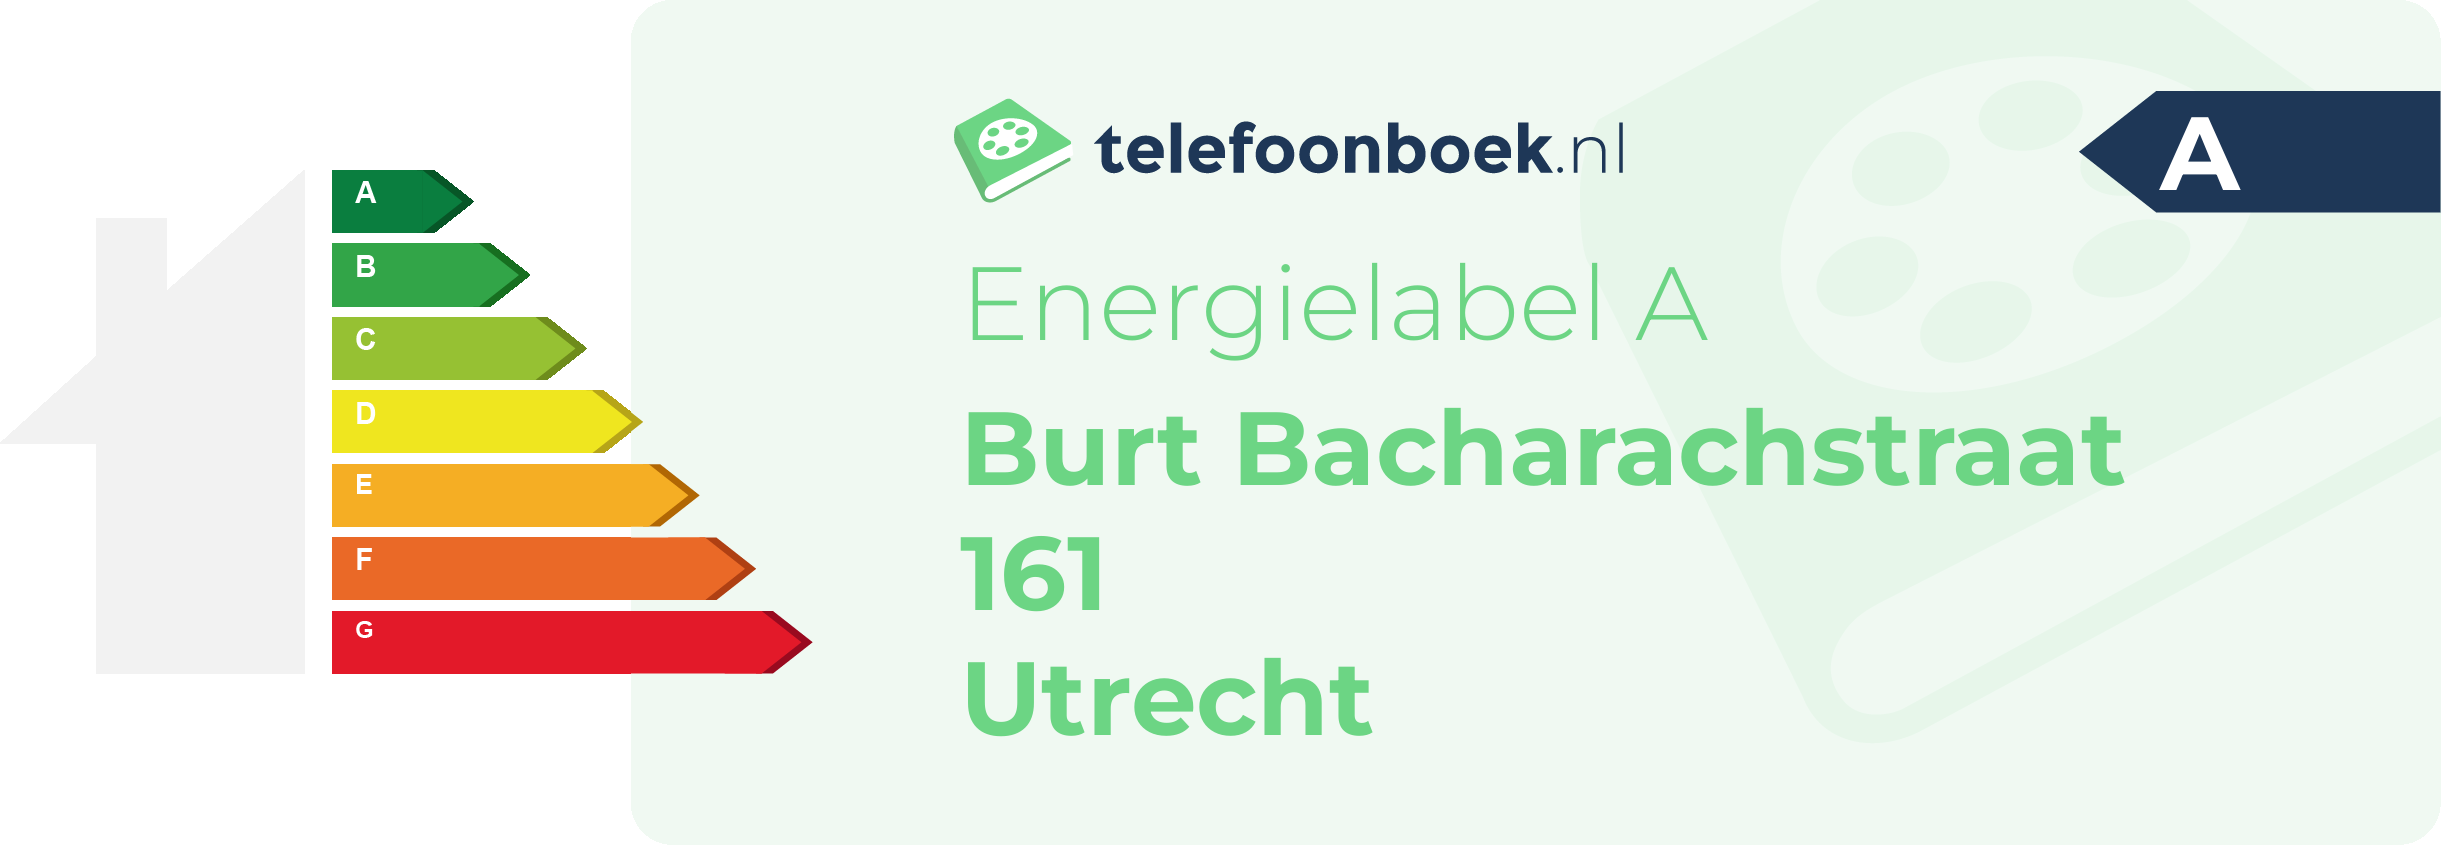 Energielabel Burt Bacharachstraat 161 Utrecht